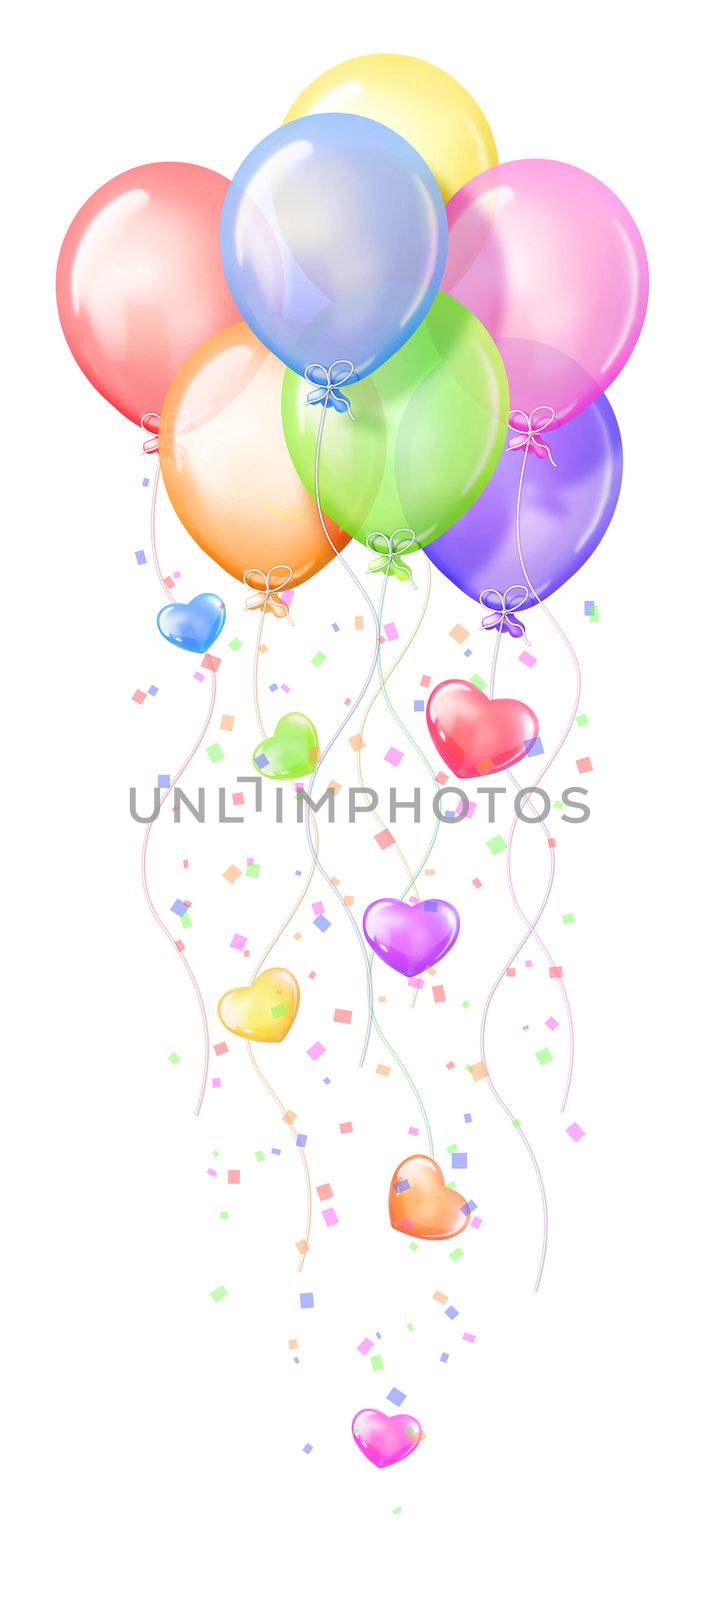 Cartoon birthday balloons with hearts.